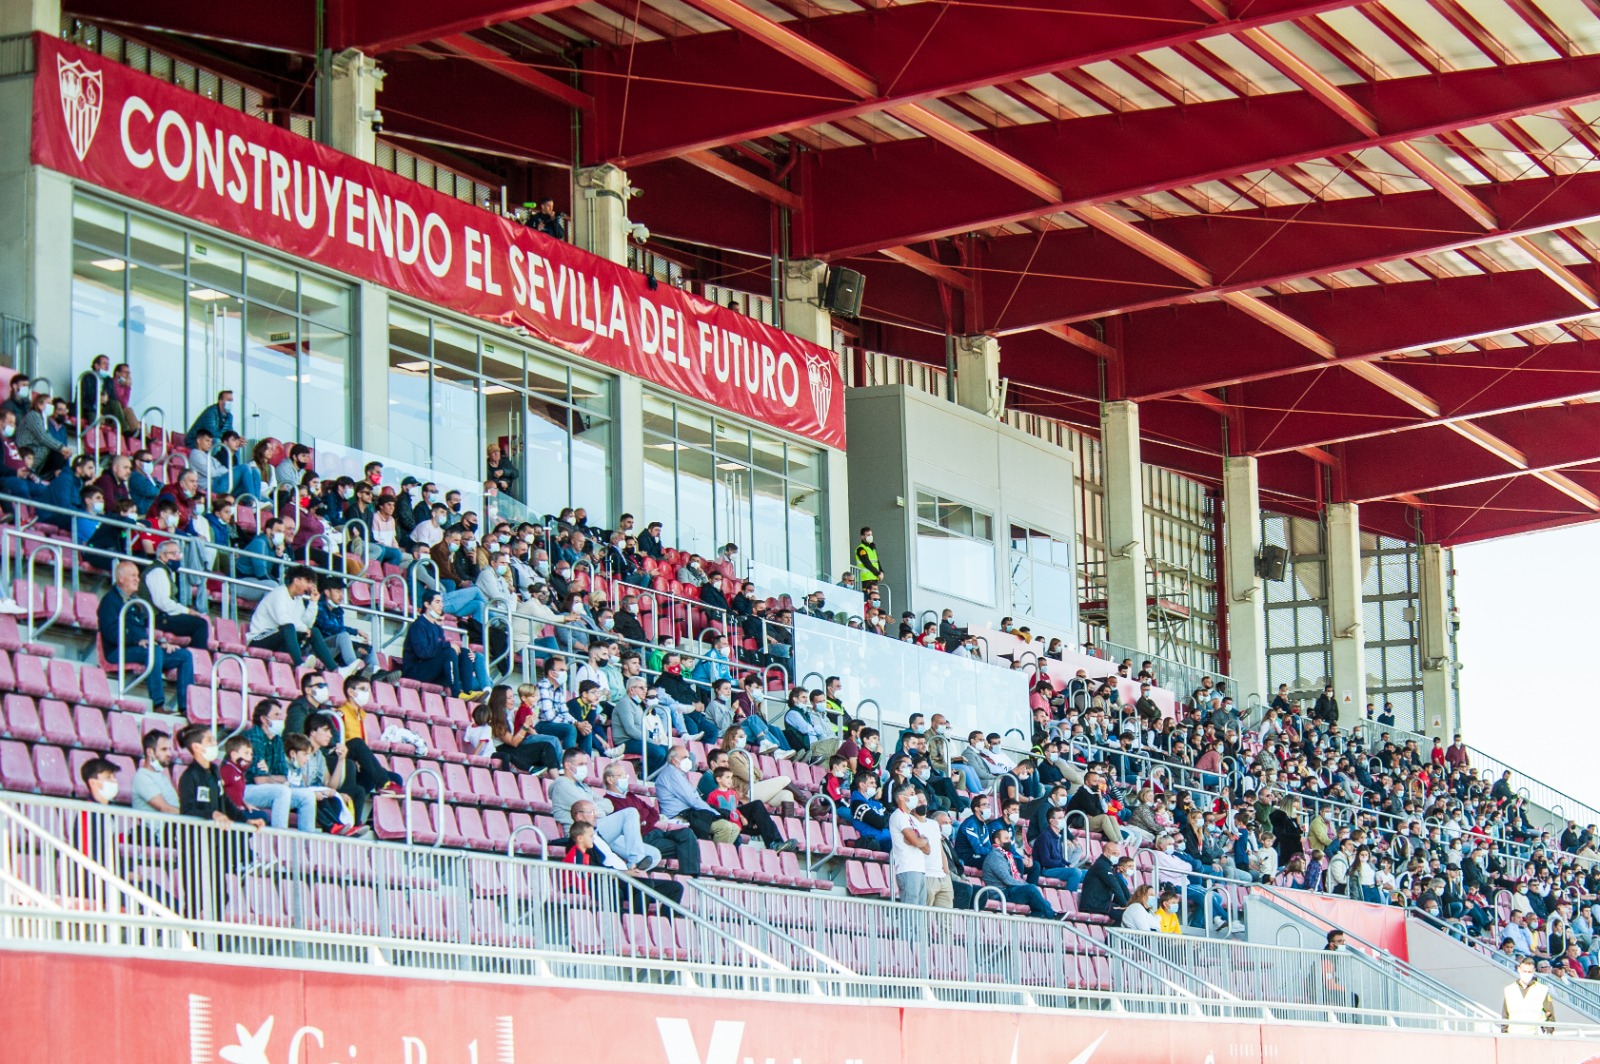 Estadio Jesús Navas